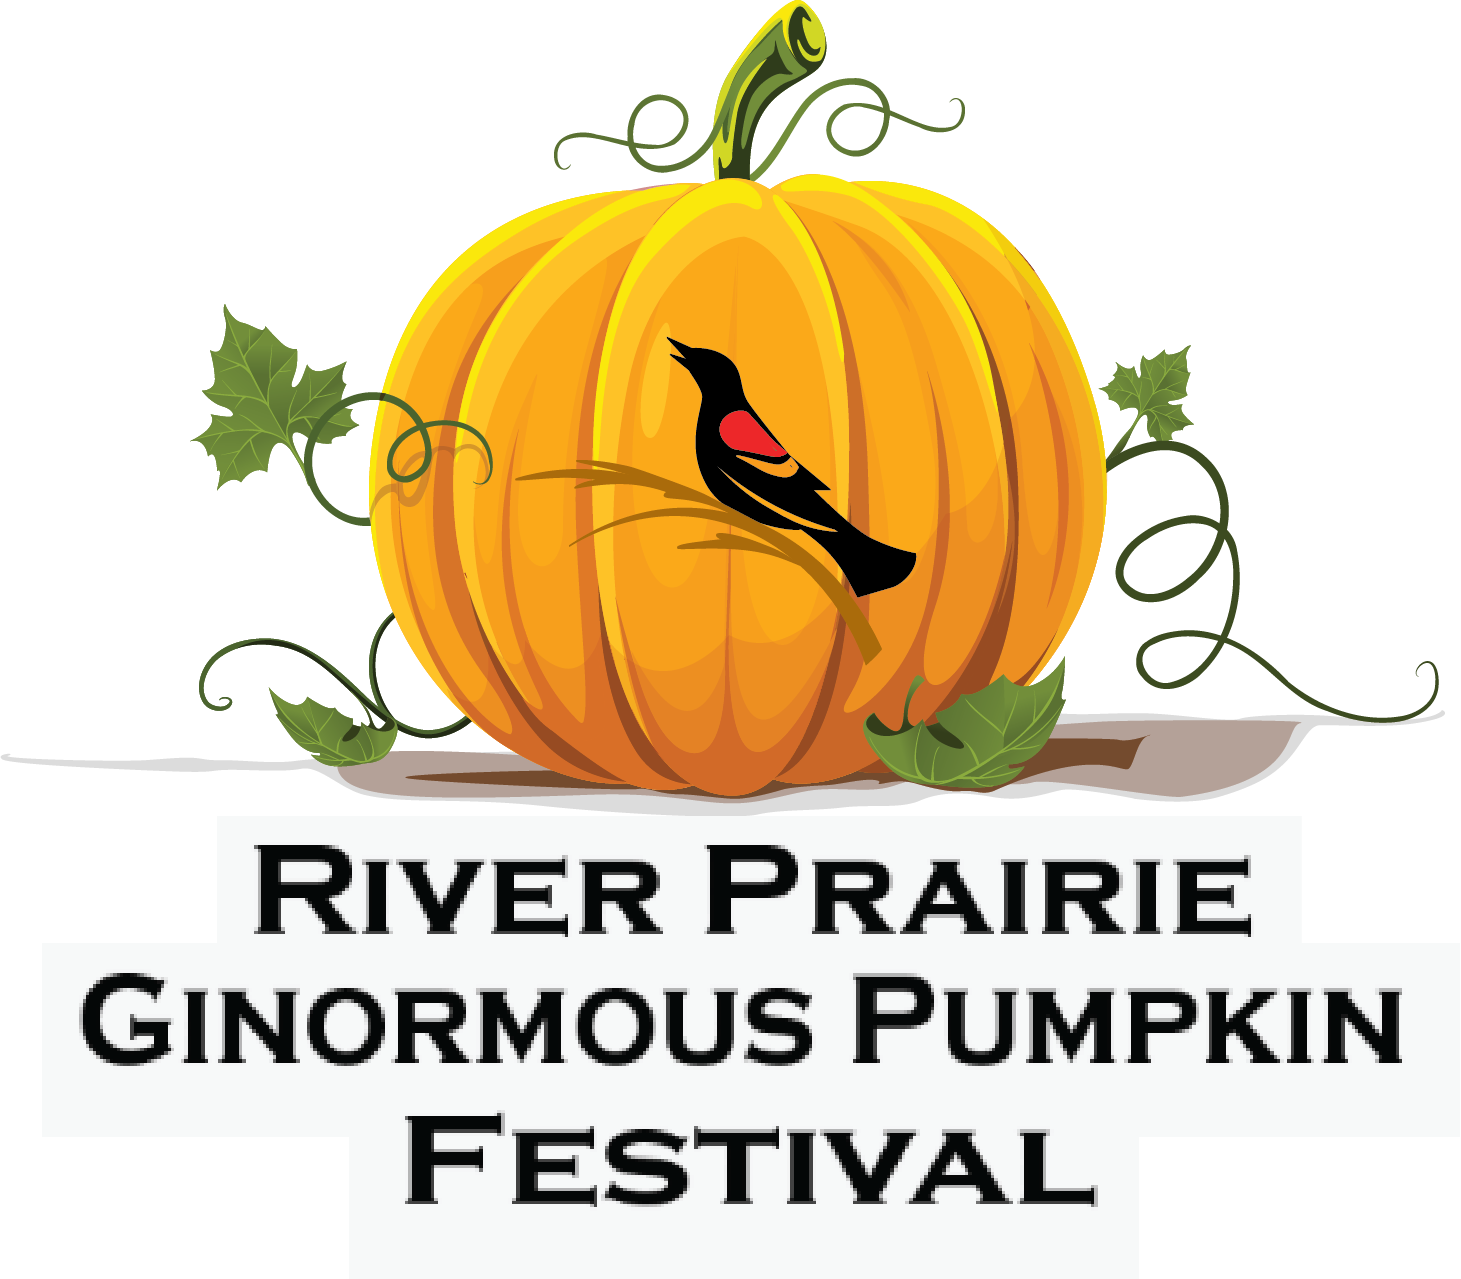 River Prairie Ginormous Pumpkin Festival